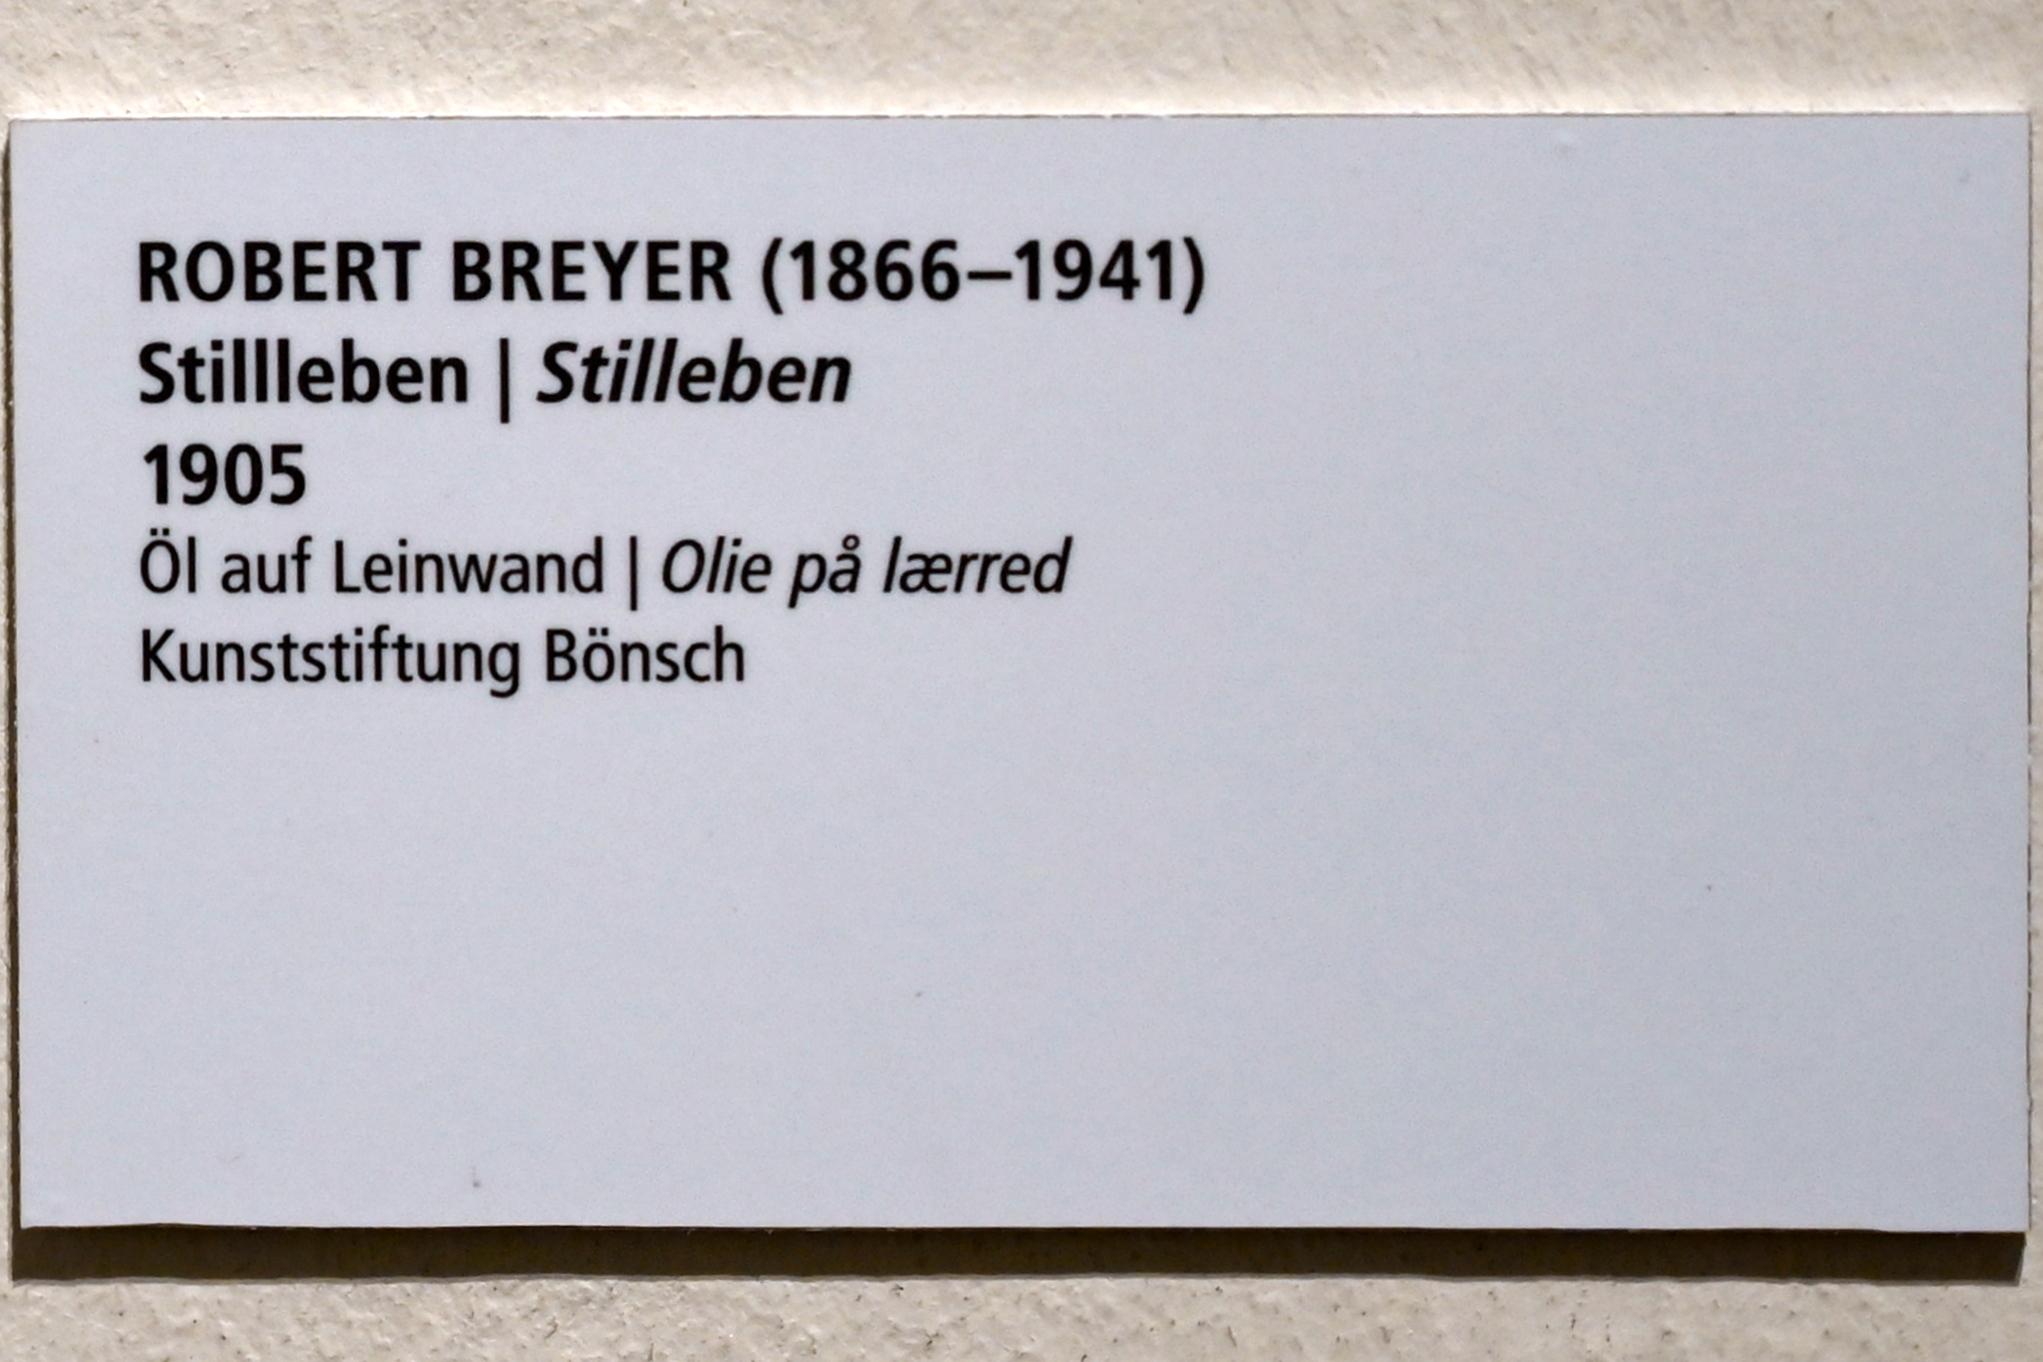 Robert Breyer (1905), Stillleben, Schleswig, Landesmuseum für Kunst und Kulturgeschichte, Saal 45, 1905, Bild 2/2